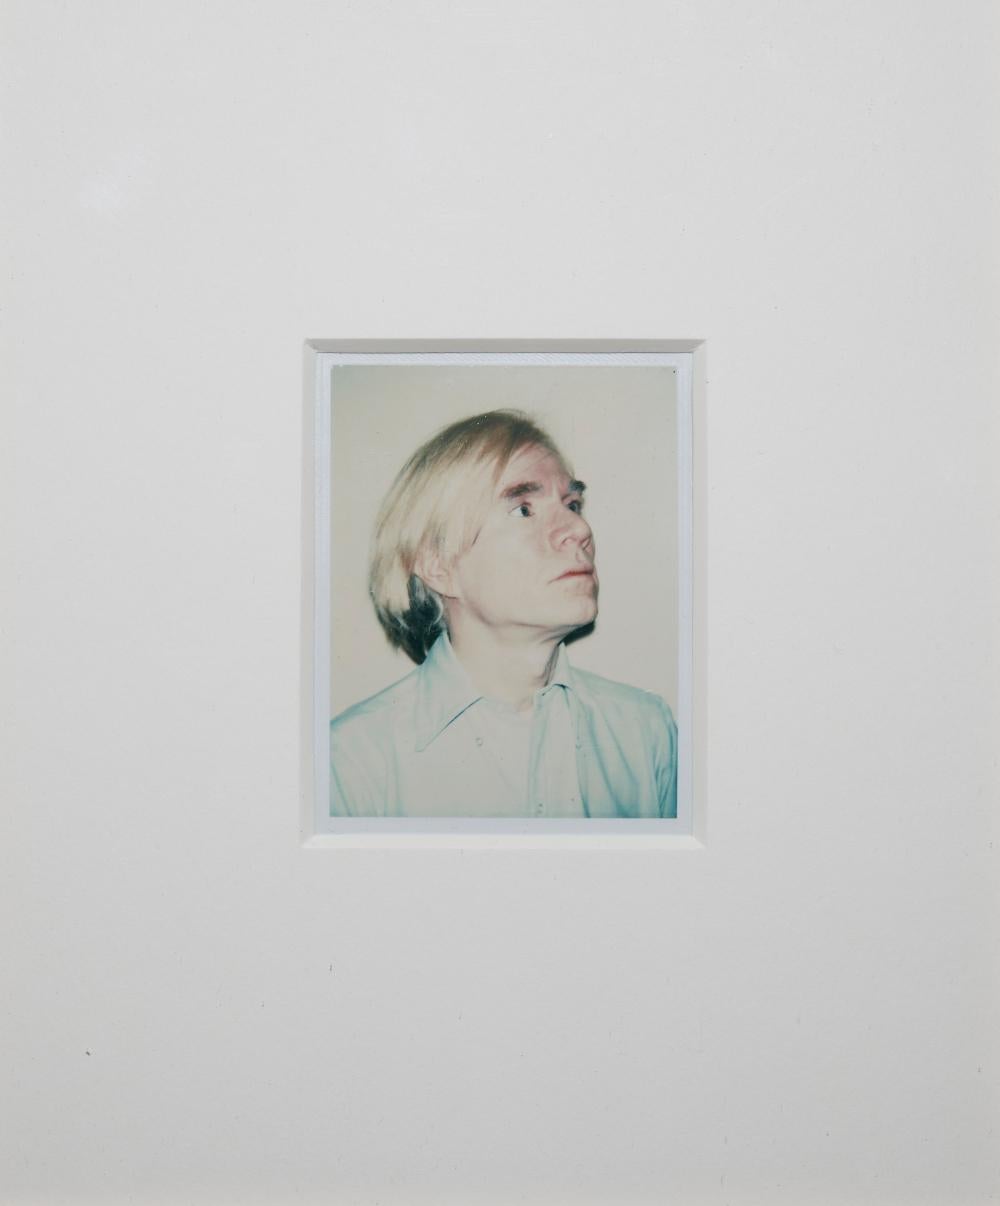 Auto-portrait - Photograph de Andy Warhol